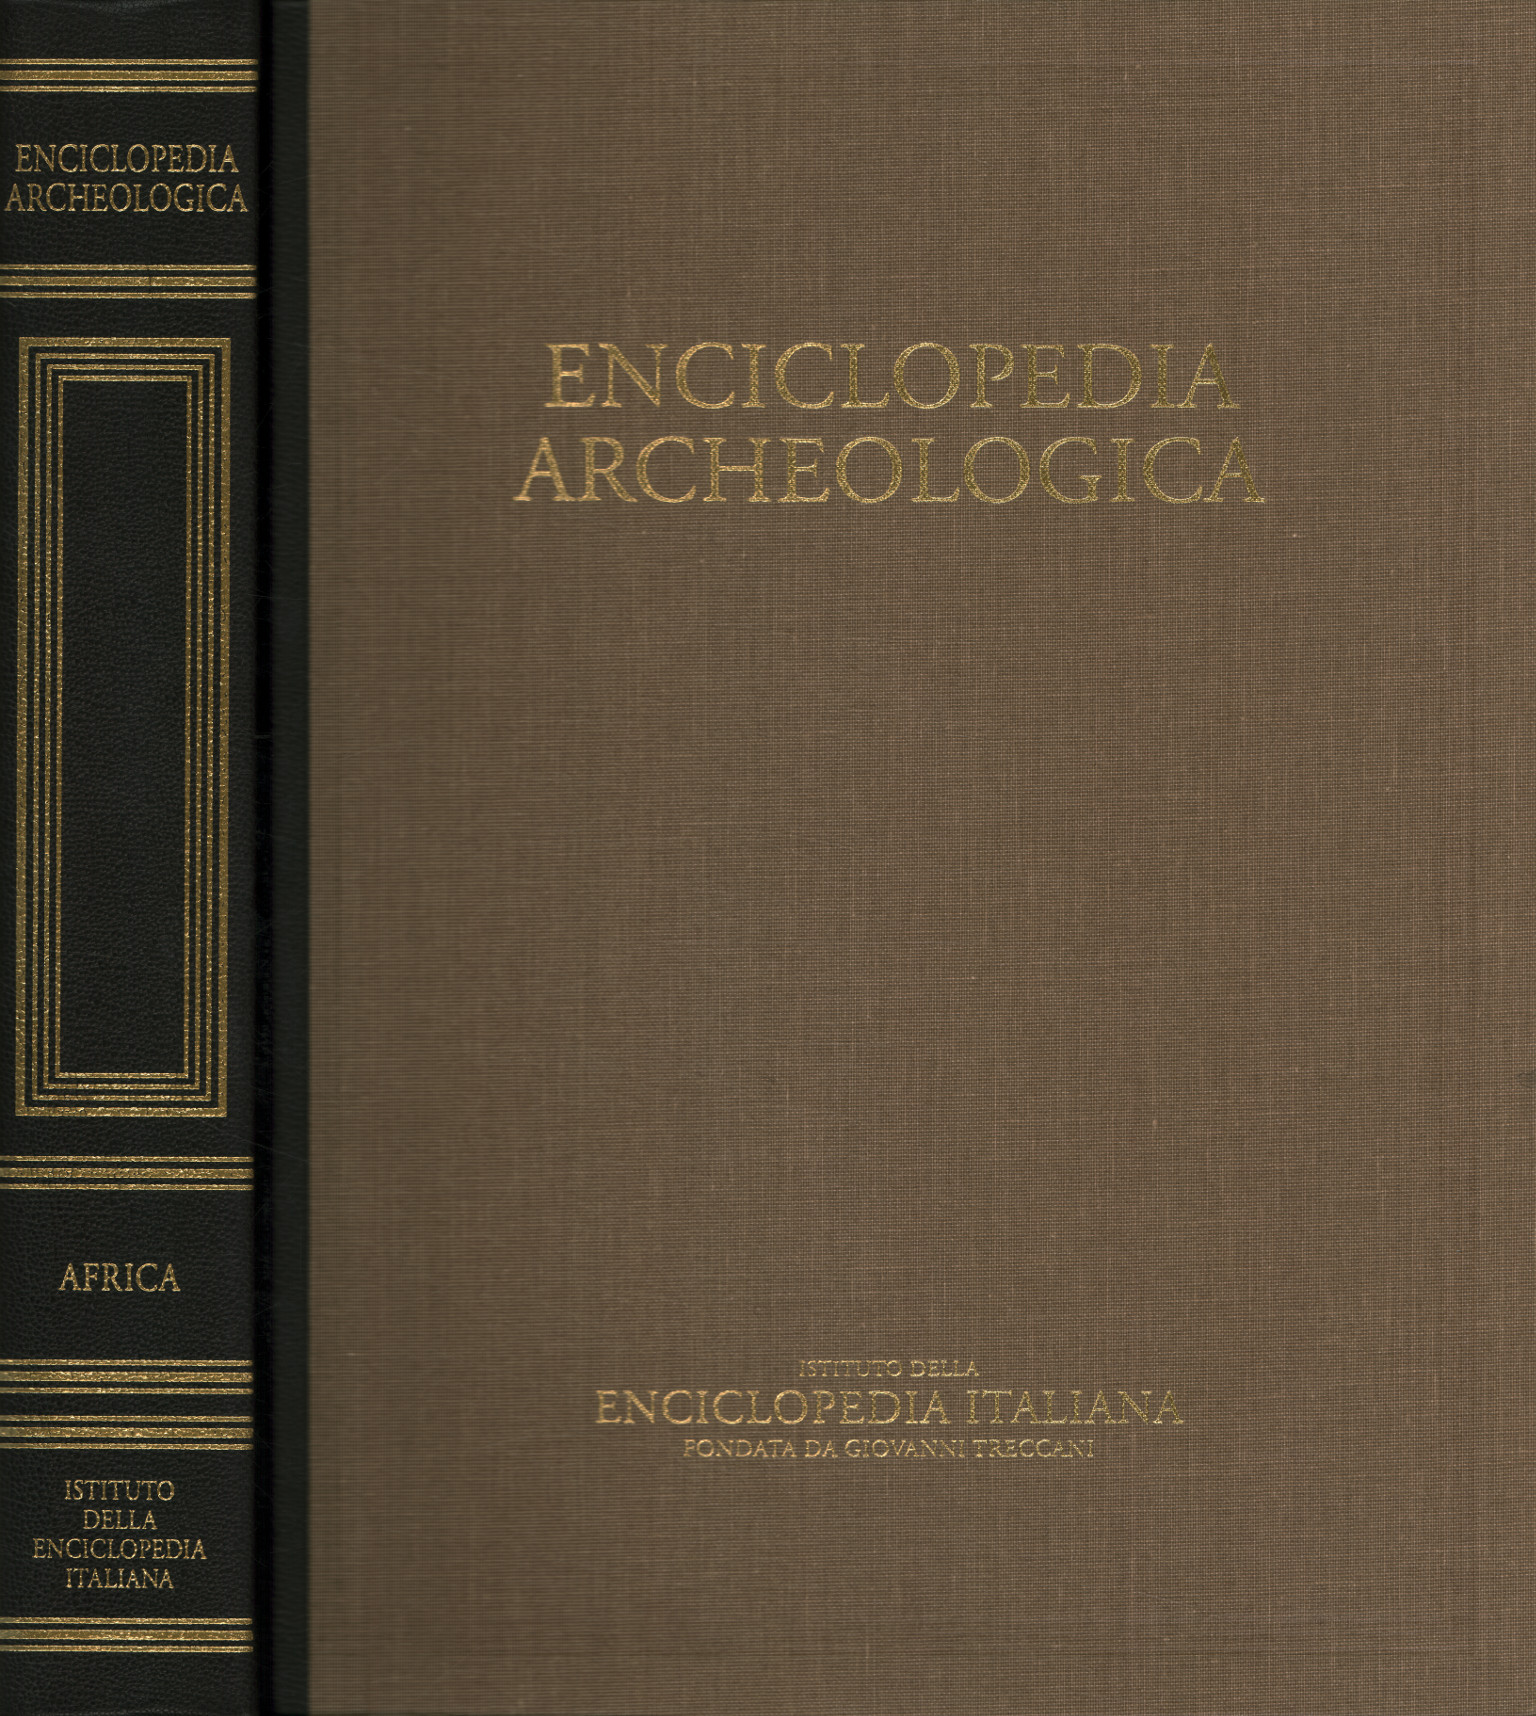 Archäologische Enzyklopädie. Afrika